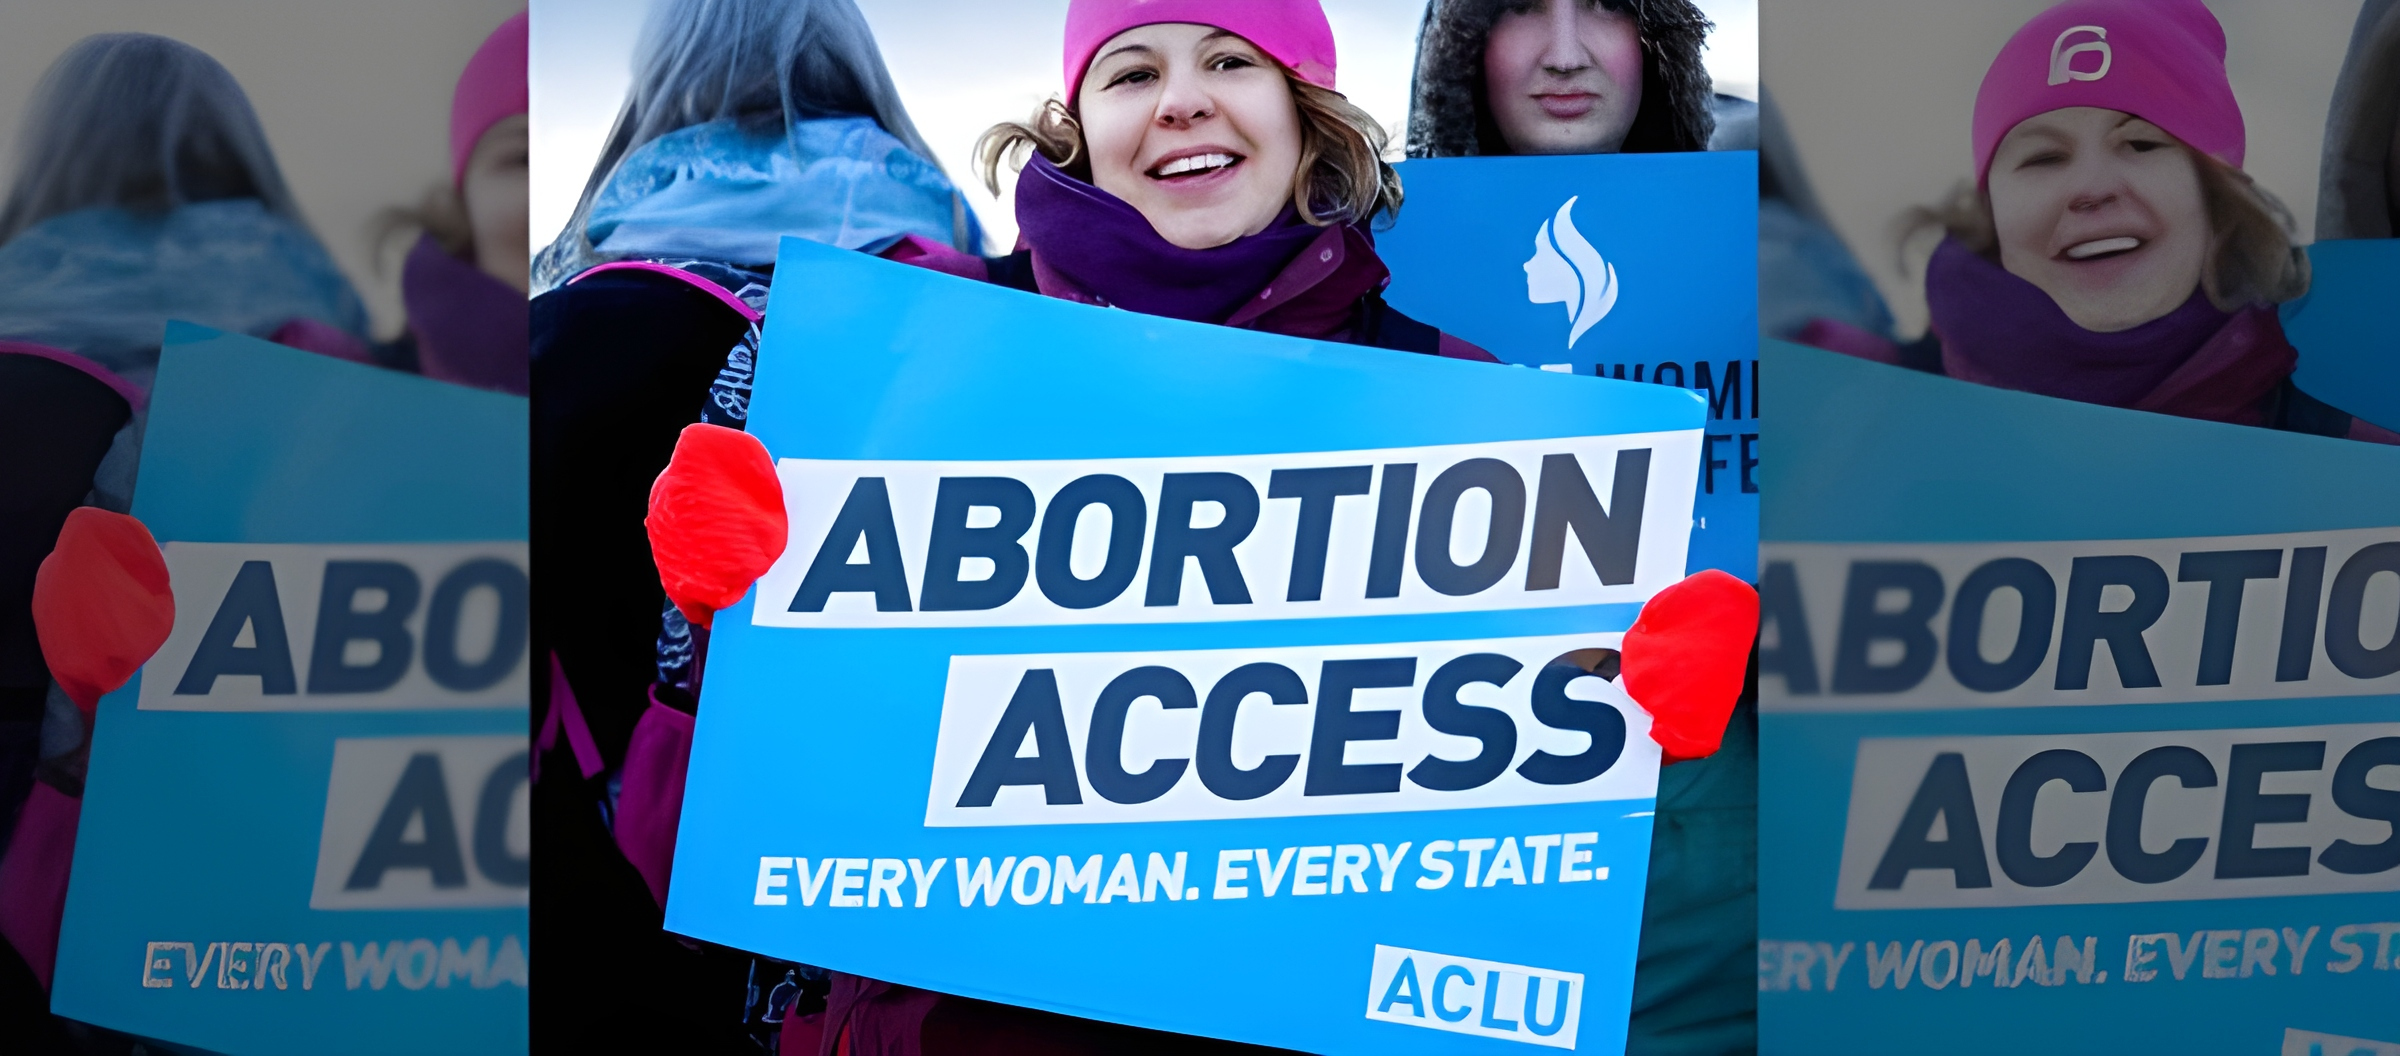 Republicanos sin una estrategia nacional unificada en torno al aborto